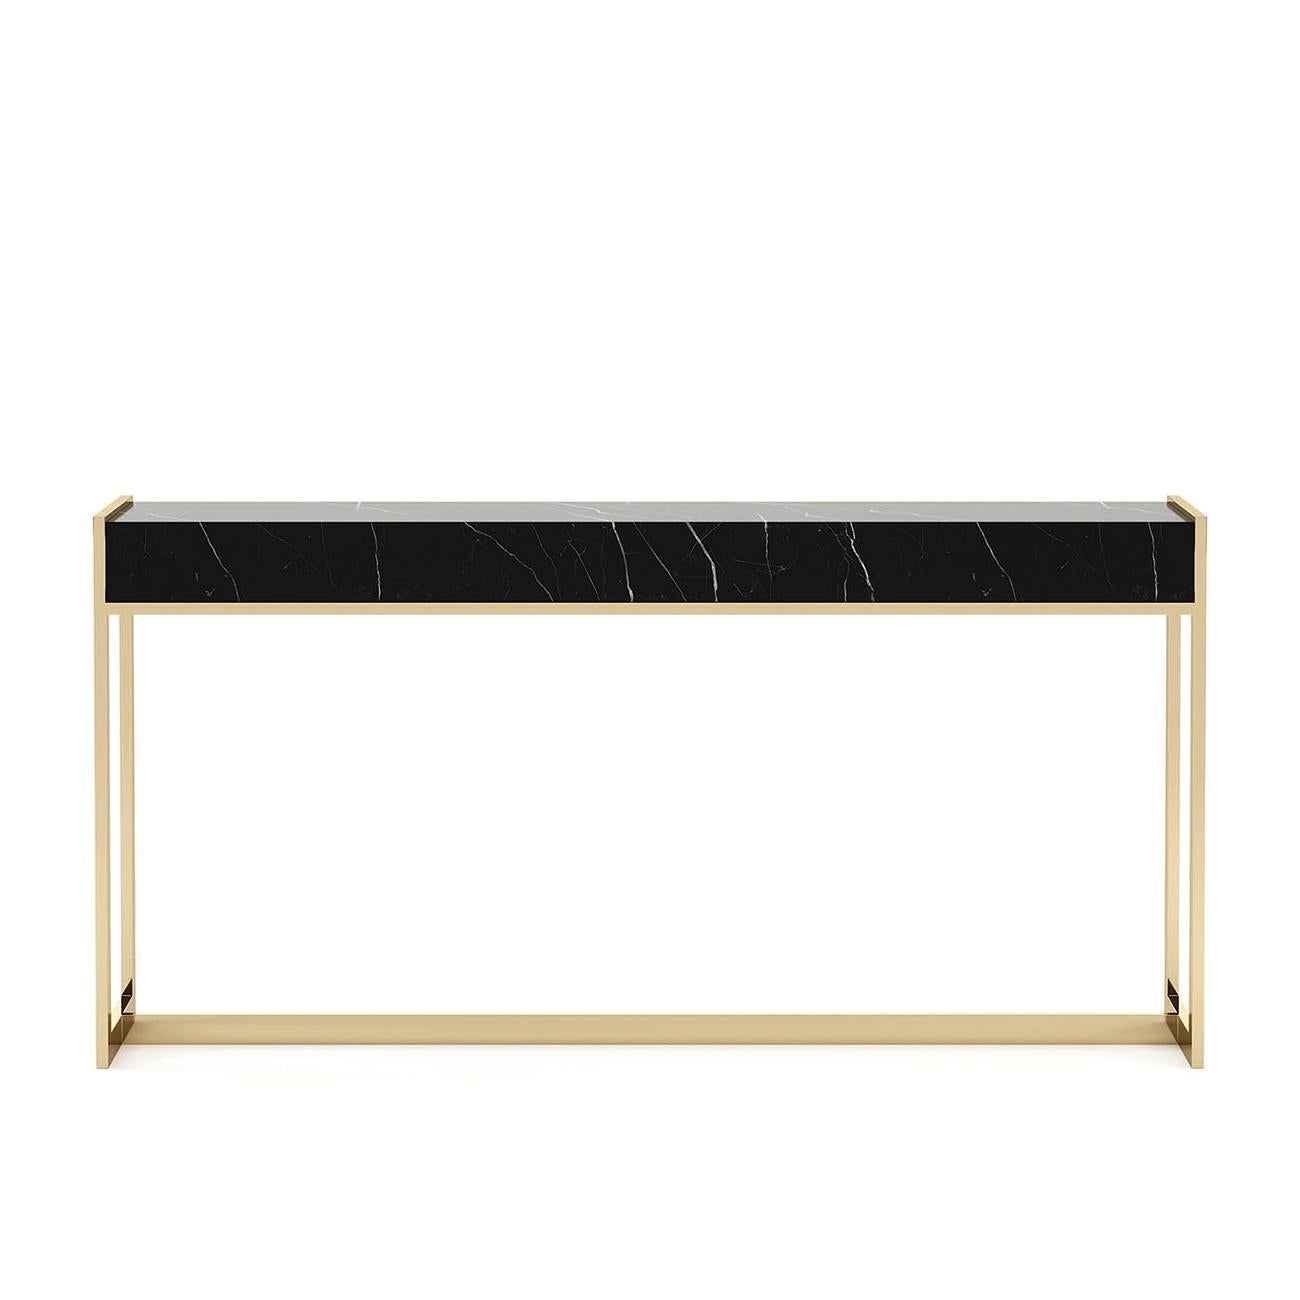 Table console tanja avec plateau en marbre Sahara noir et
avec une structure en acier inoxydable poli en finition dorée.
Également disponible avec d'autres finitions en acier inoxydable sur demande.